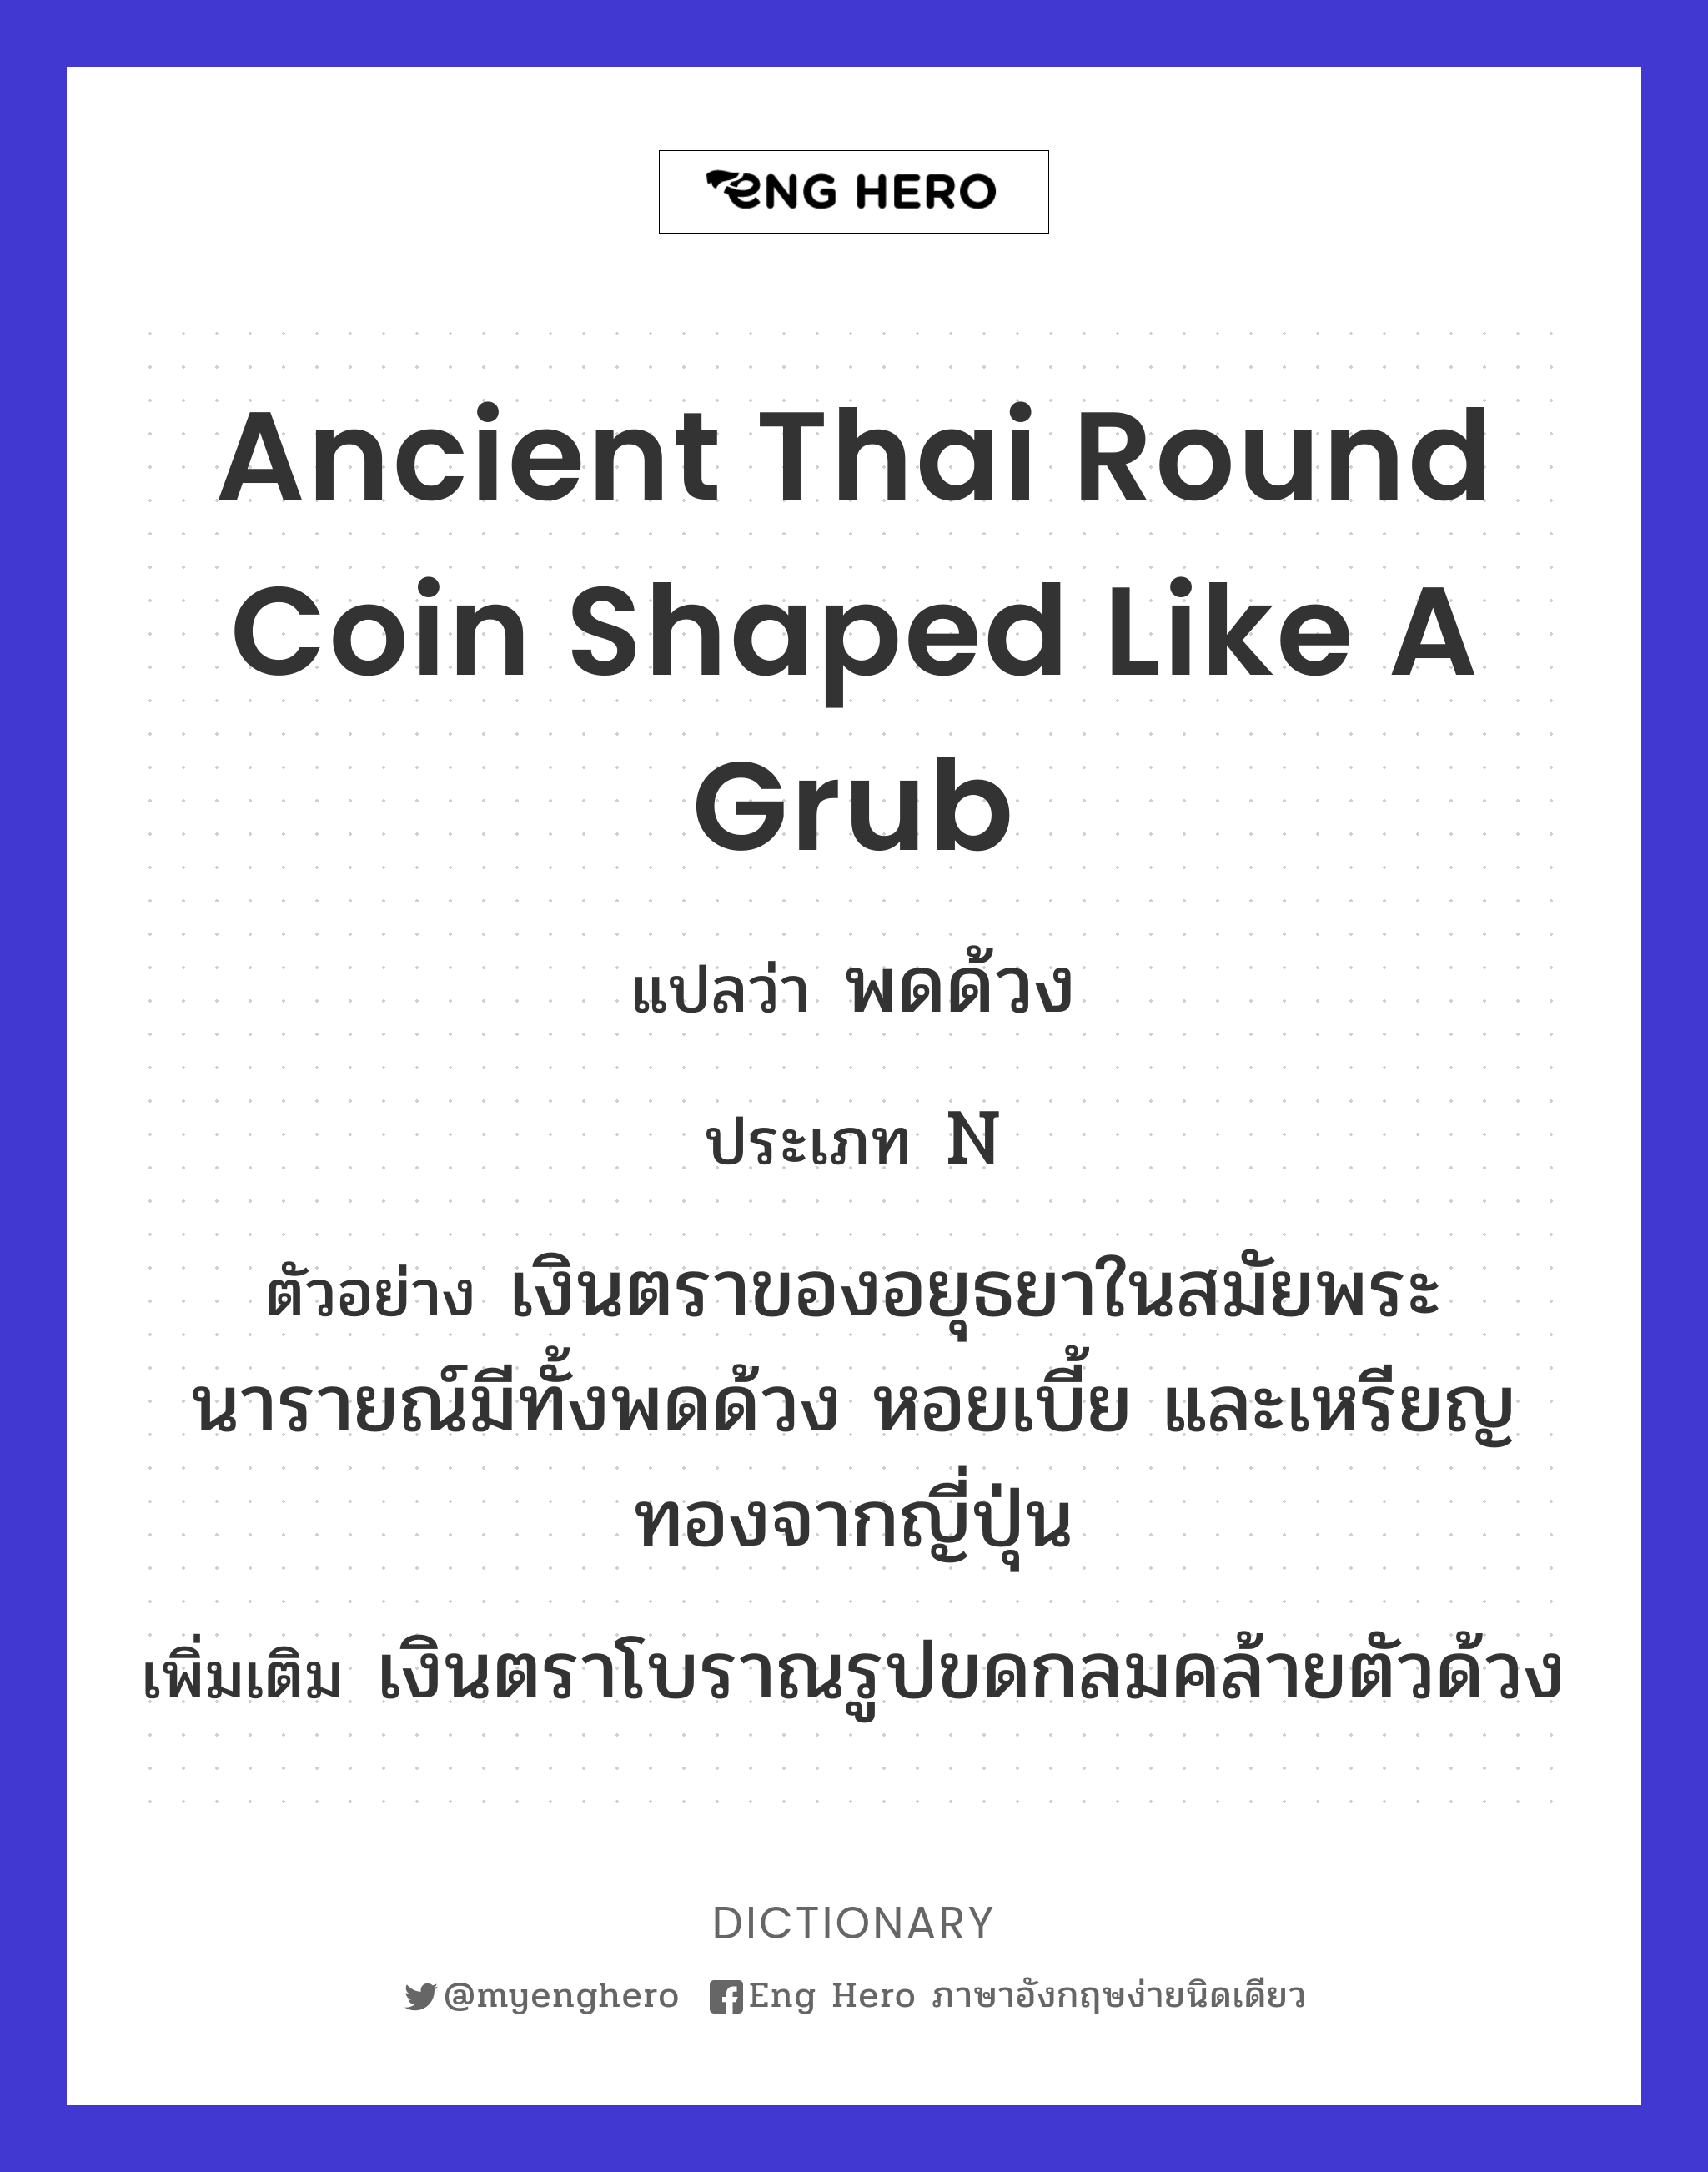 ancient Thai round coin shaped like a grub